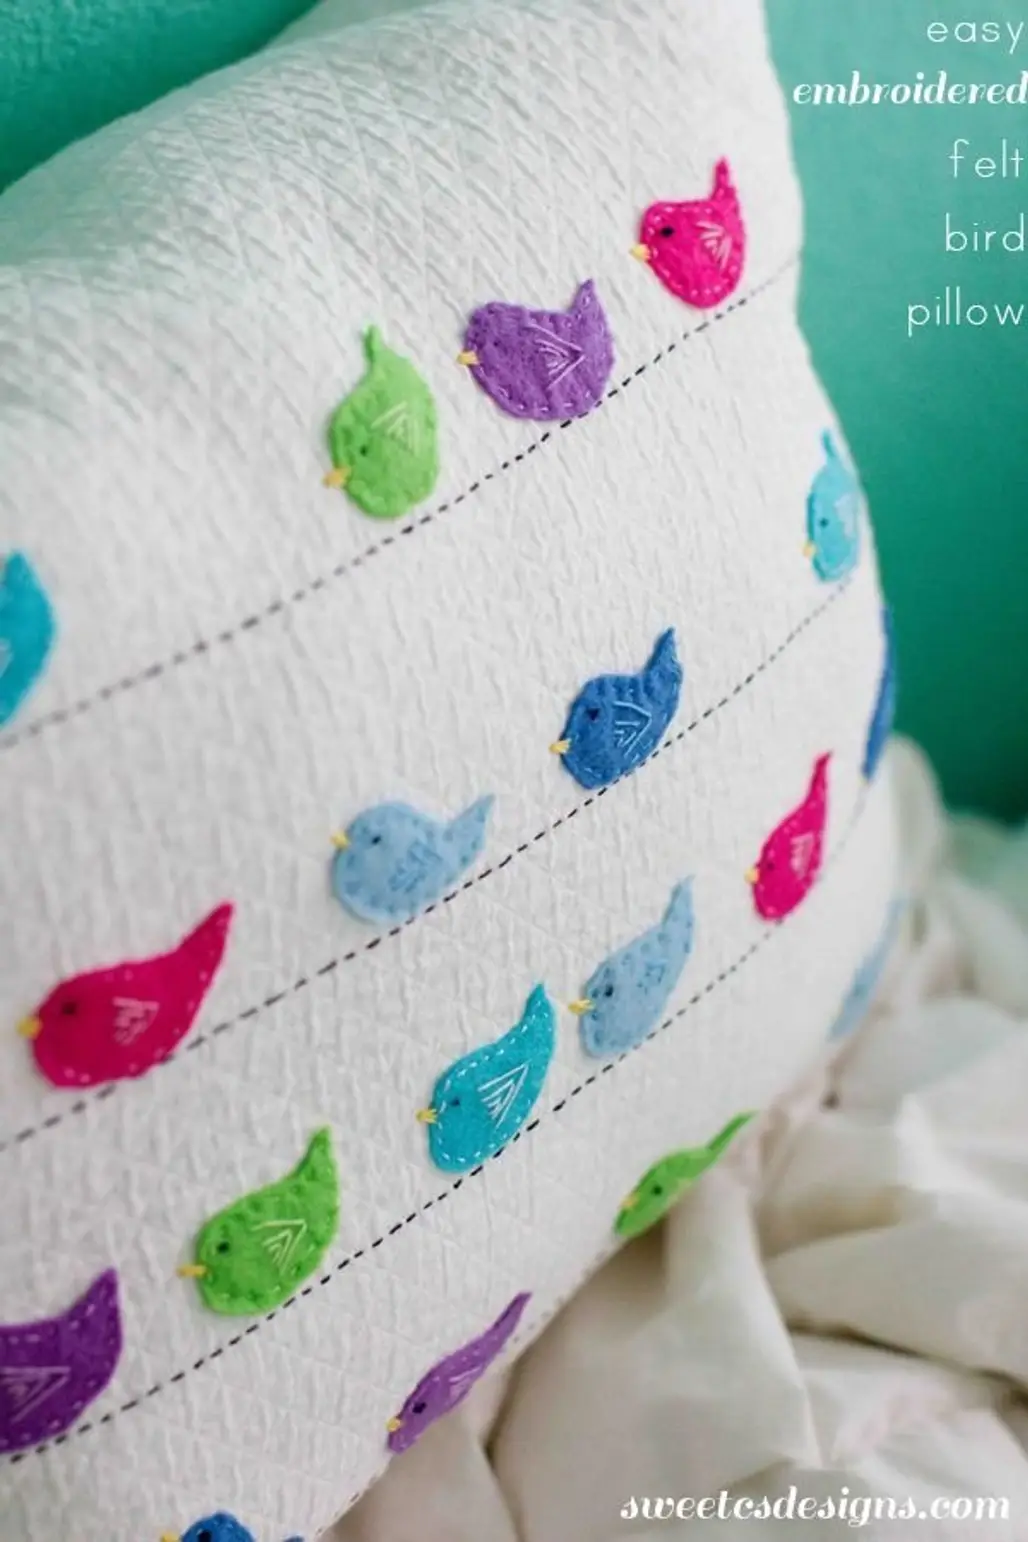 Embroidered Felt Bird Pillow